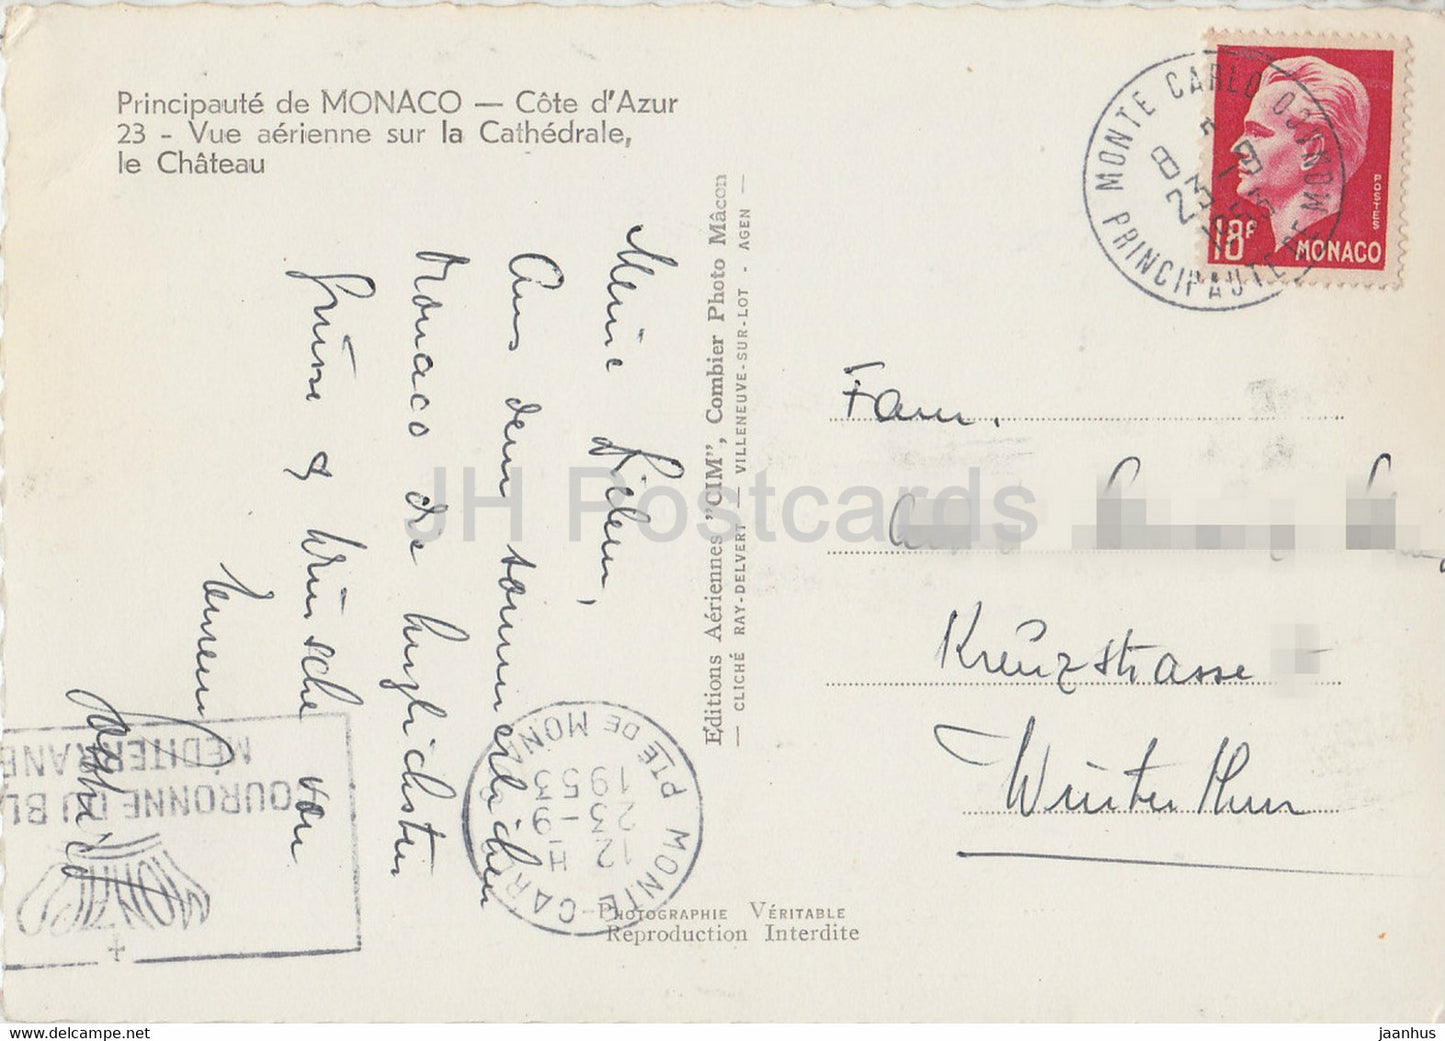 Vue aerienne sur la Cathedrale - Le Chateau - cathedral - castle - old postcard - 1953 - Monaco - used